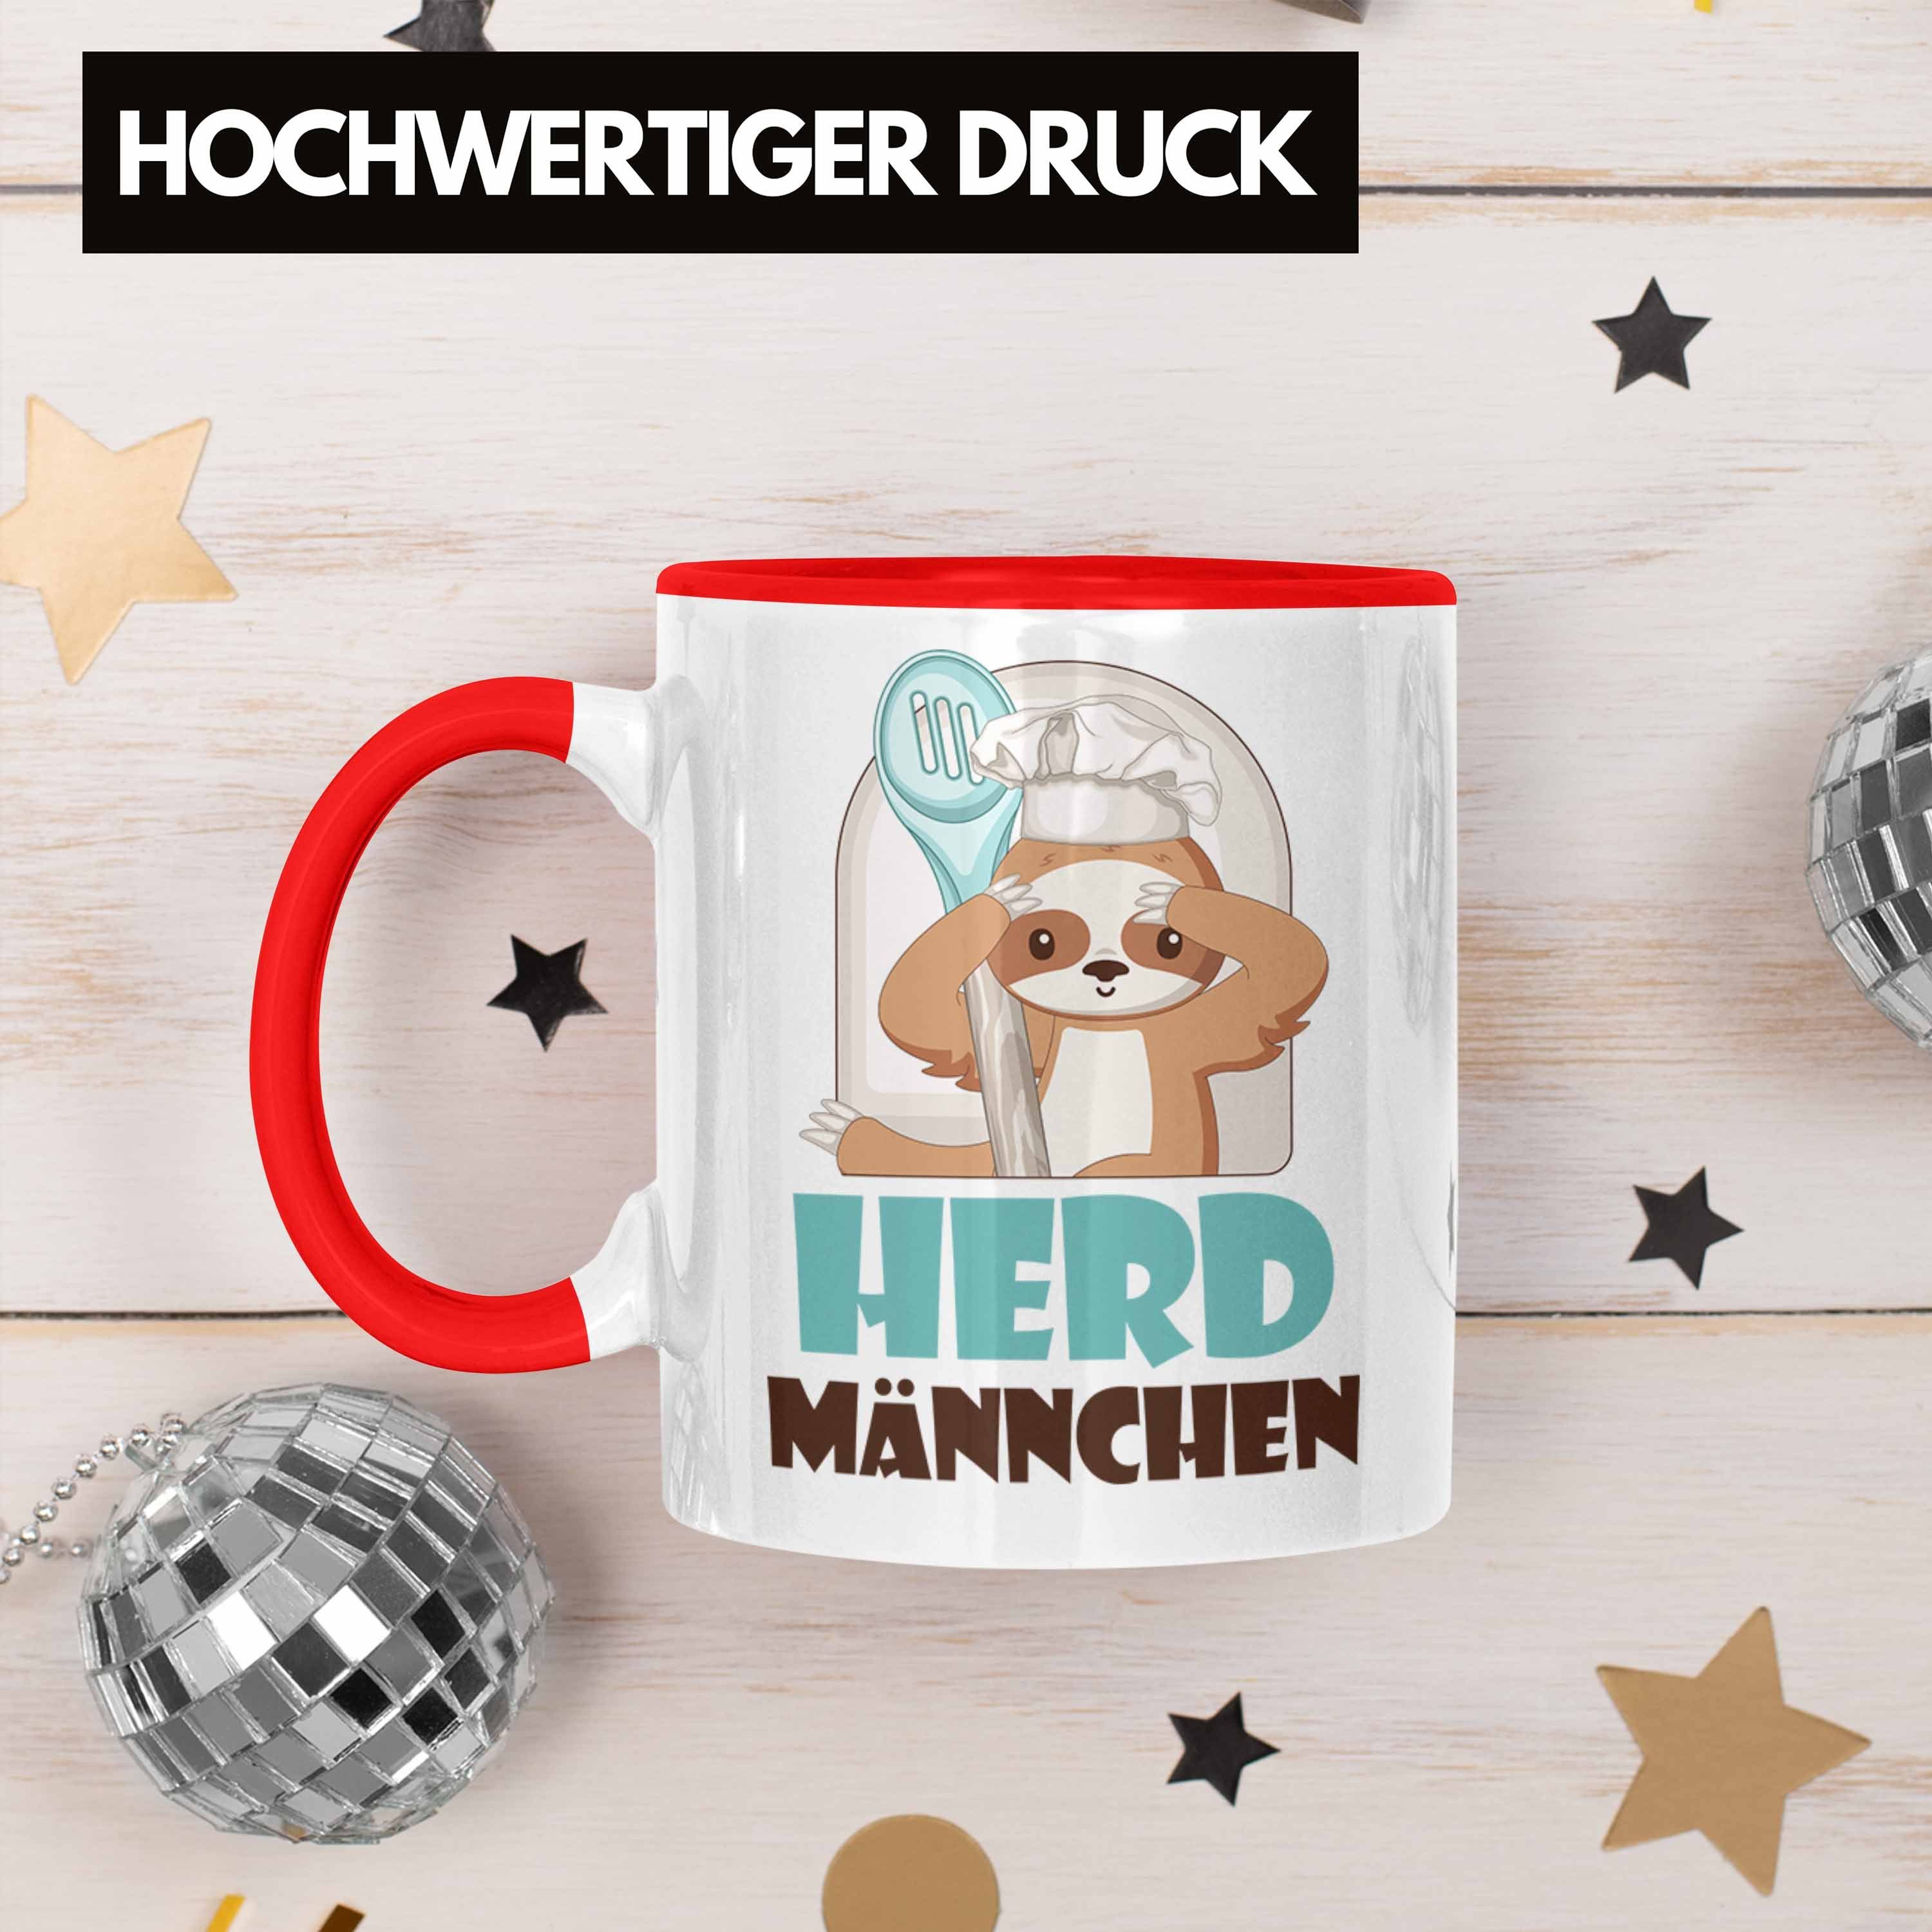 Herd-Männchen - Rot Geschenkiee für Geschenk Tasse Tasse Trendation Trendation Köche Koch